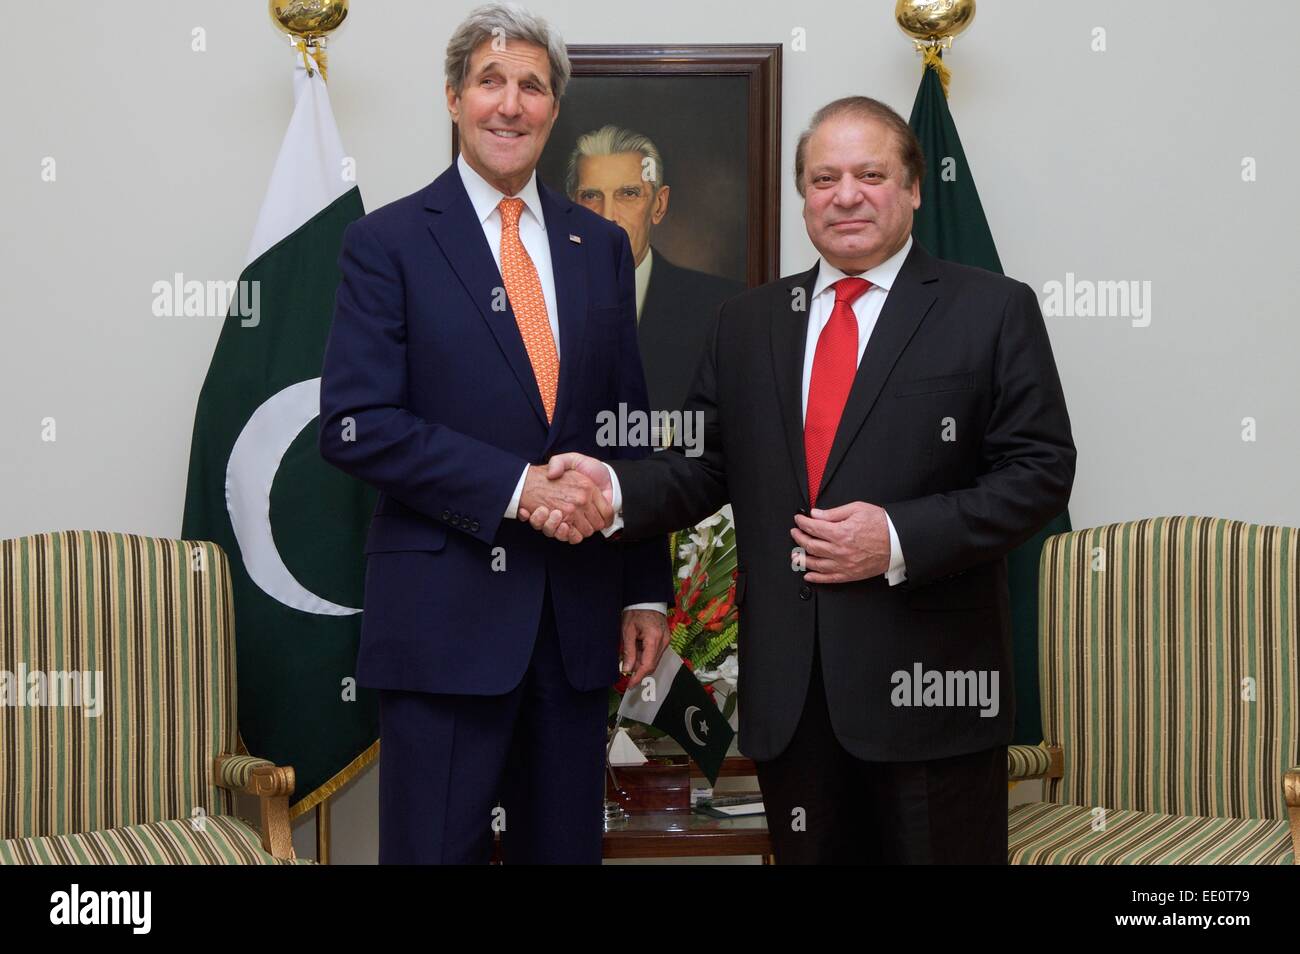 La Secretaria de Estado de Estados Unidos, John Kerry es saludado por el Primer Ministro paquistaní, Nawaz Sharif, antes de una reunión bilateral celebrada el 12 de enero de 2014 en Islamabad, Pakistán. Foto de stock